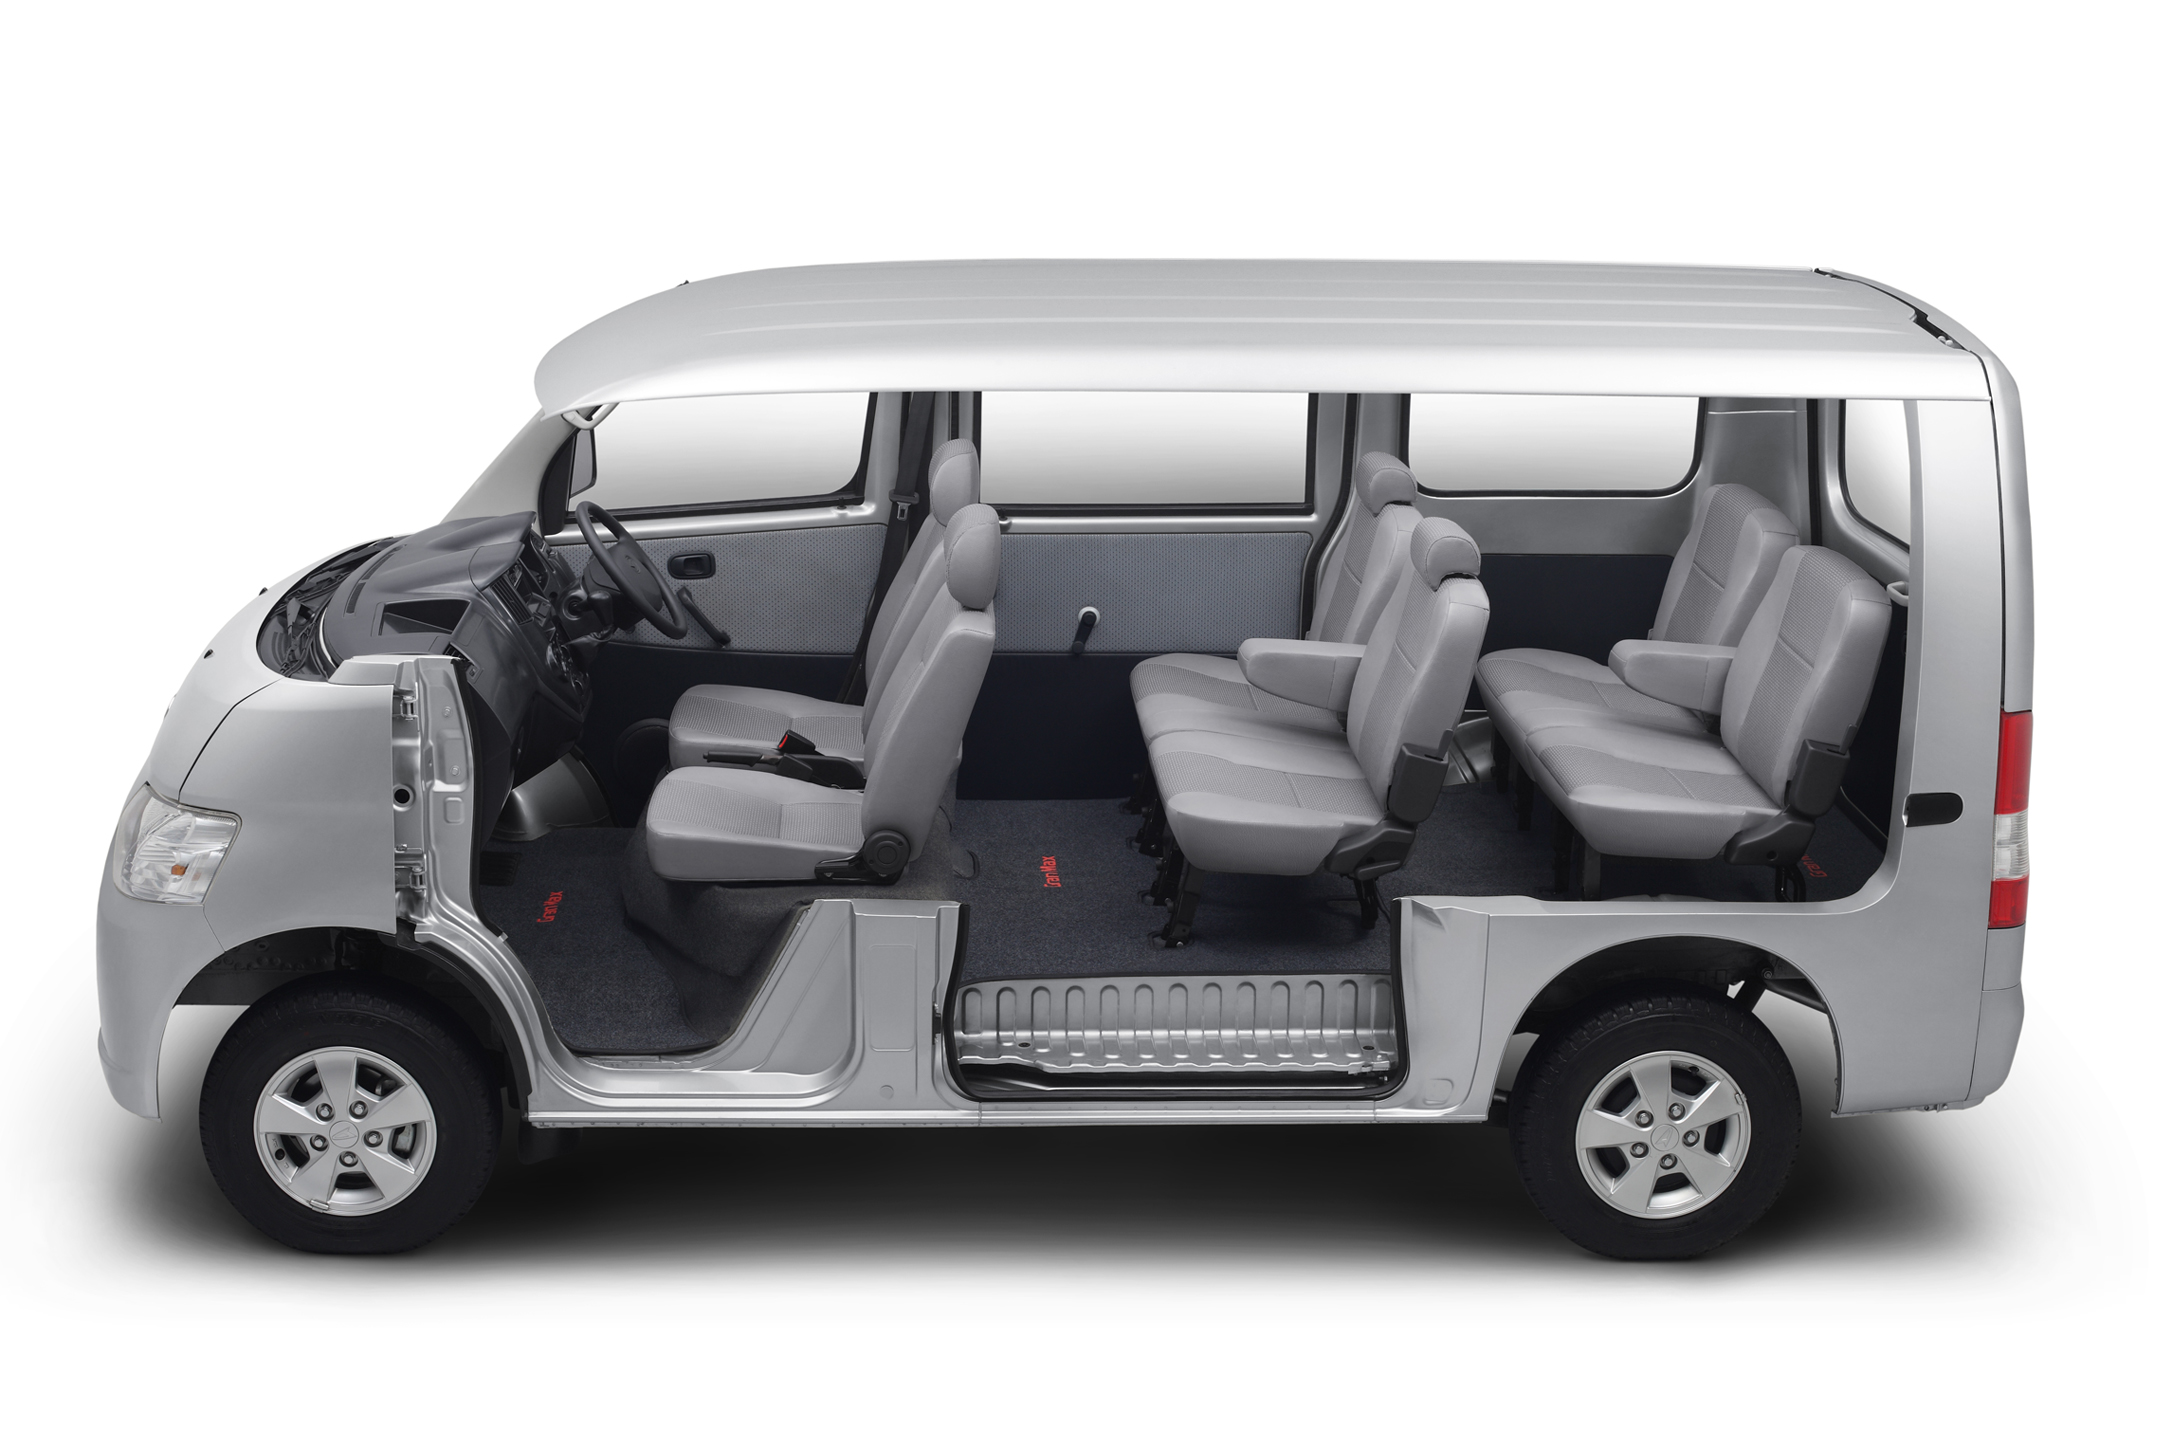 Gambar Daihatsu Luxio Full Modifikasi Terlengkap Modifikasi Mobil